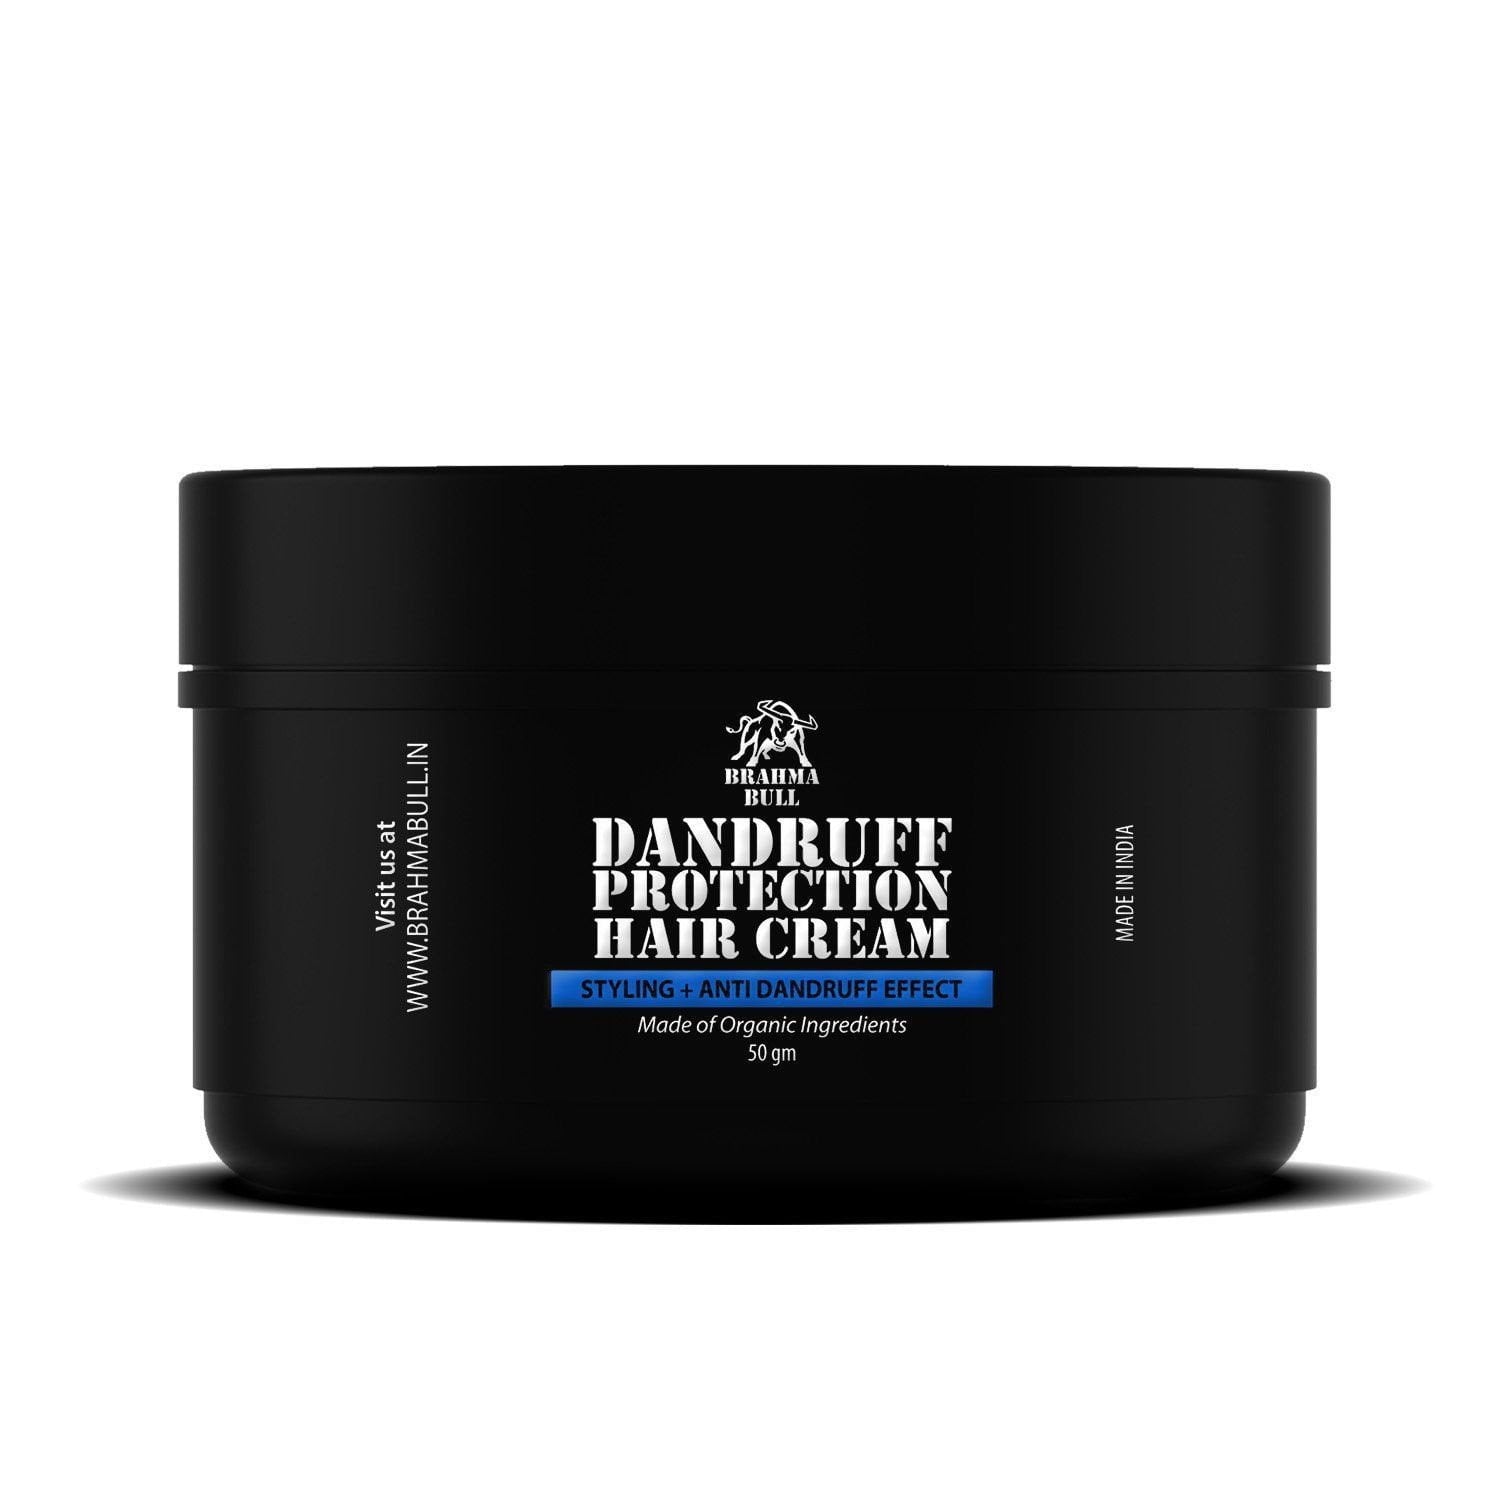 Dandruff Protection Hair Cream - Brahma Bull - Men's Grooming